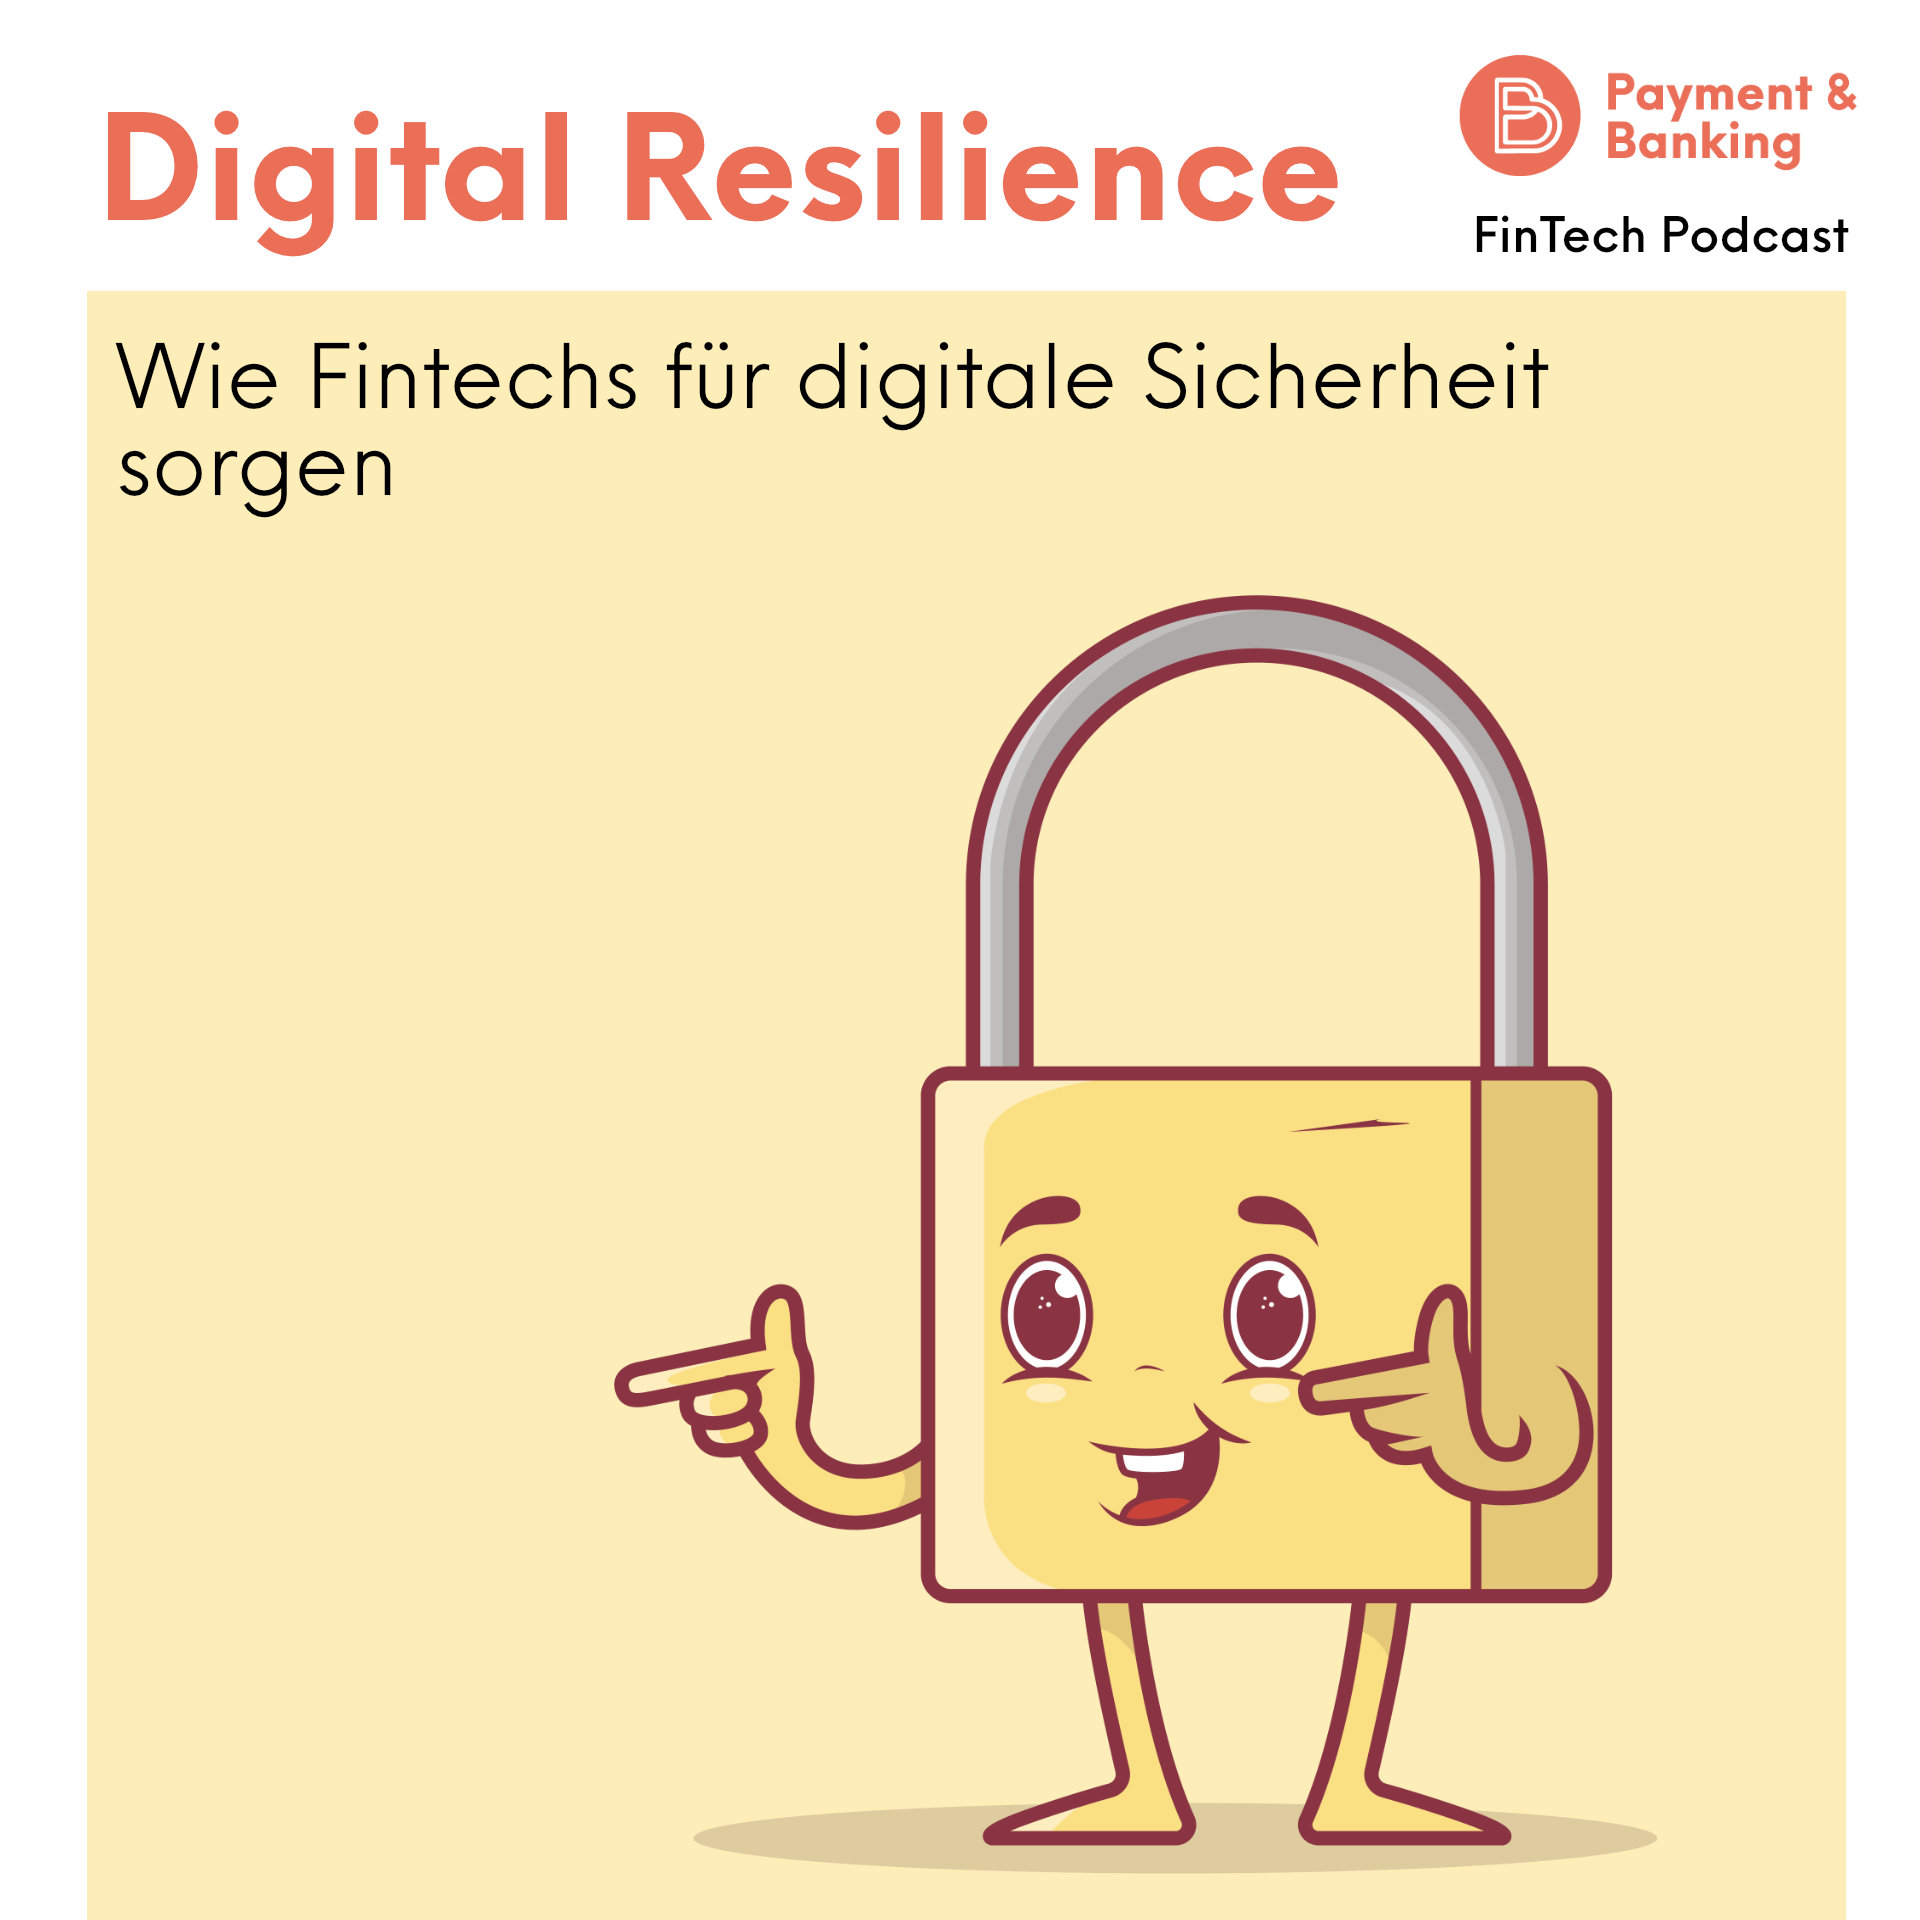 Digital Resilience: Wie Fintechs für digitale Sicherheit sorgen